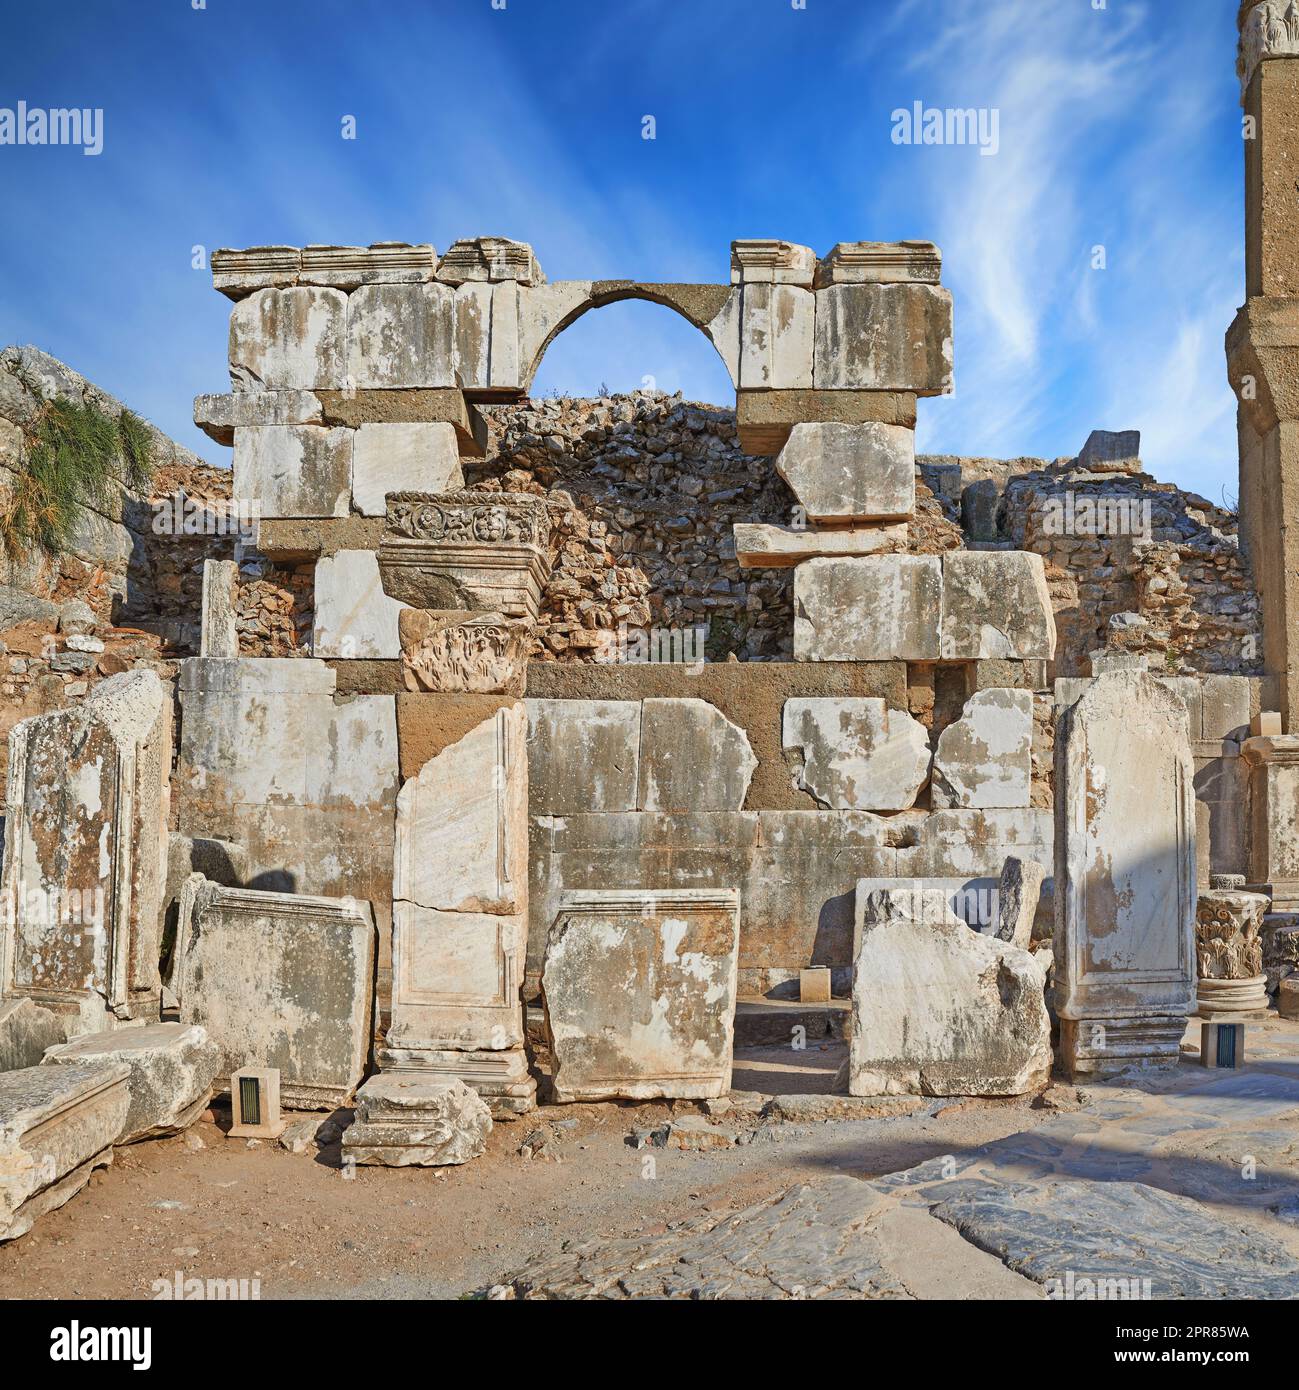 Ruines de la ville antique d'Éphèse en Turquie pendant la journée. Voyager à l'étranger et à l'étranger pour les vacances, les vacances et le tourisme. Vestiges de la pierre de construction historique de l'histoire et de la culture turques excavés Banque D'Images